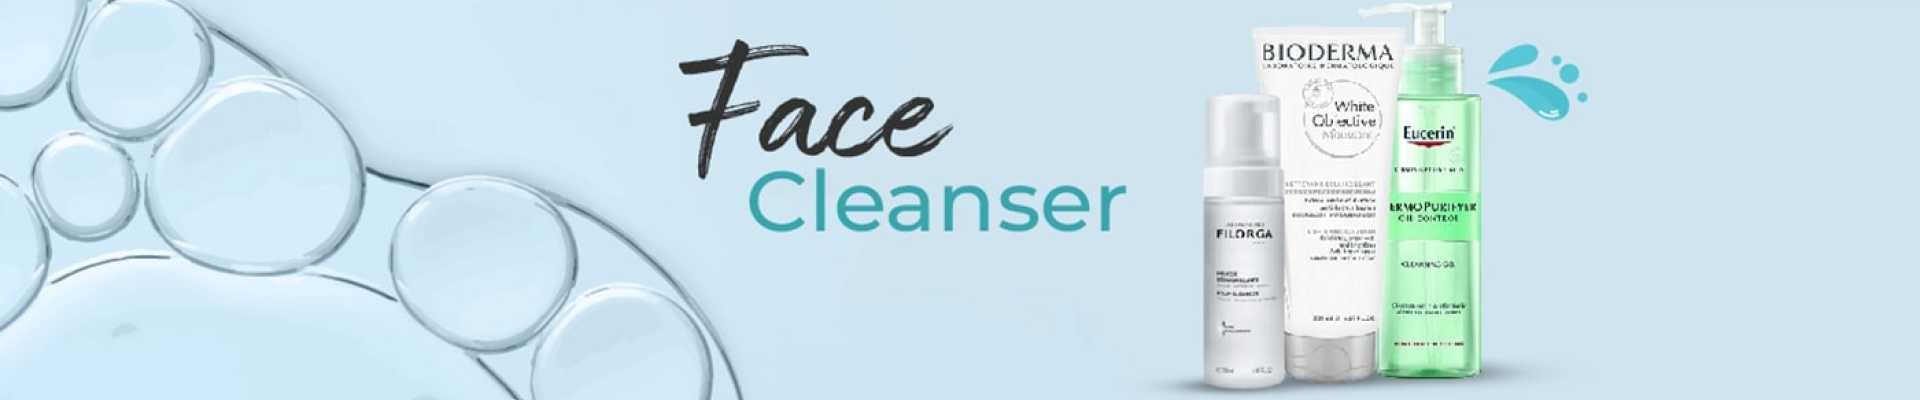 face cleanser slider